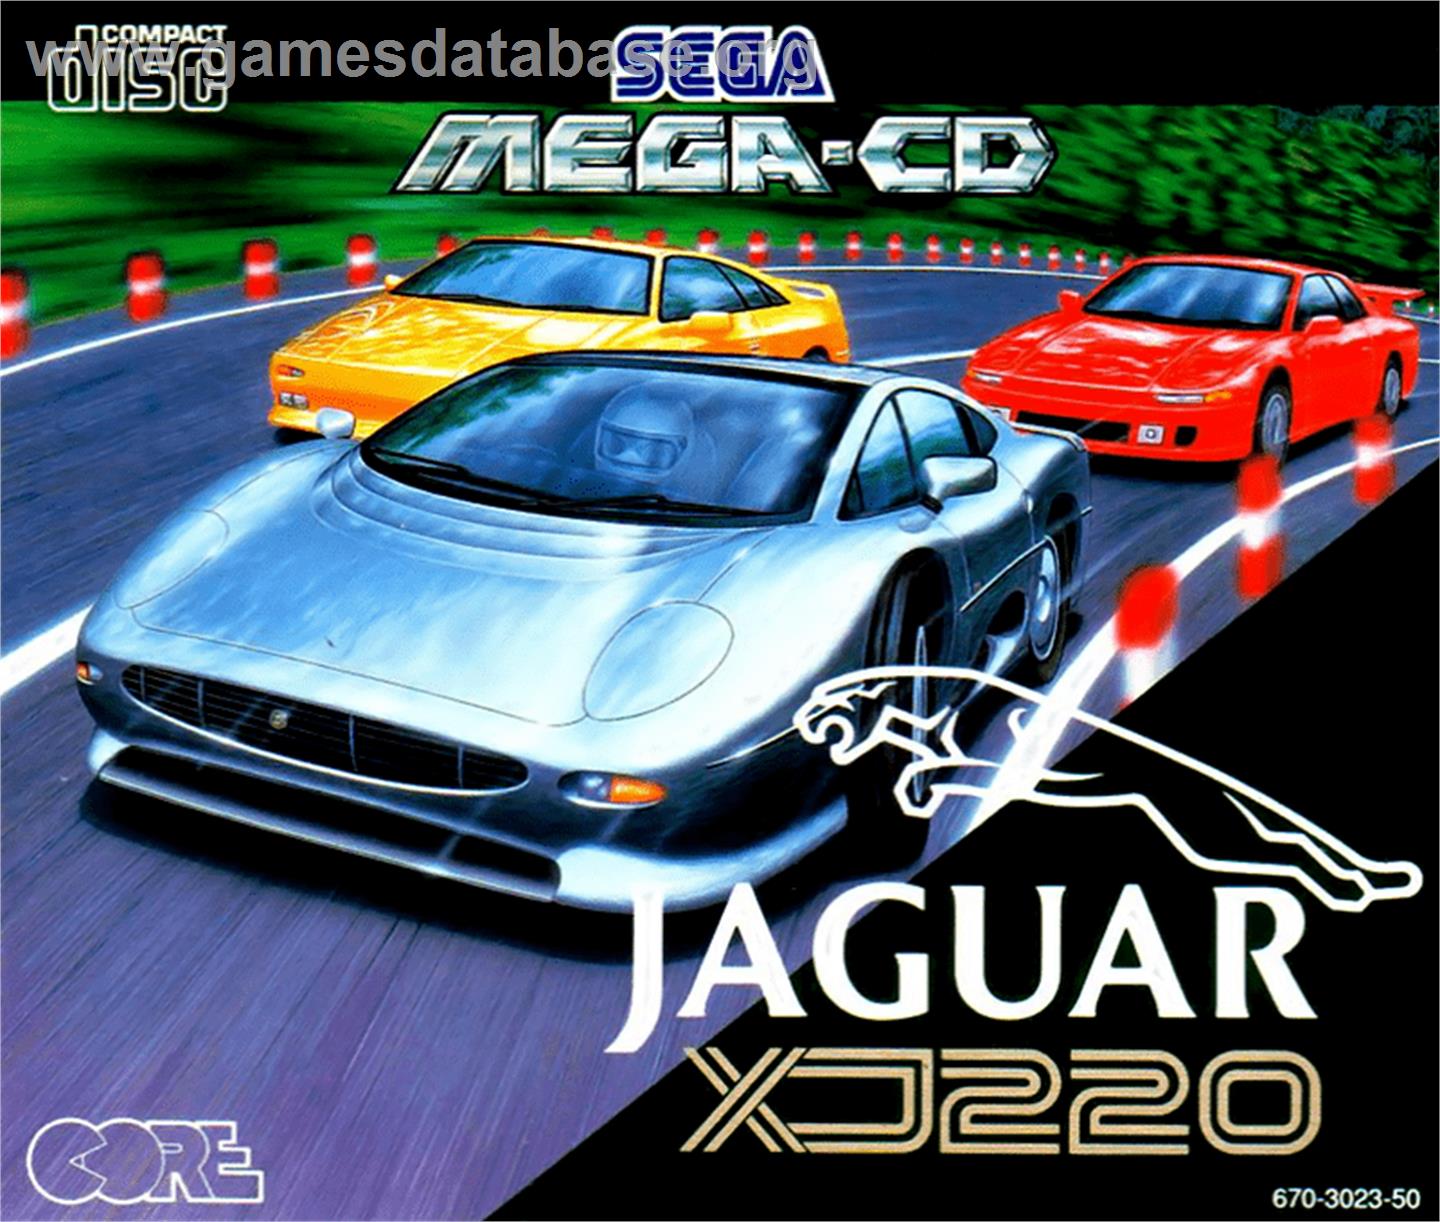 Jaguar XJ220 - Sega CD - Artwork - Box